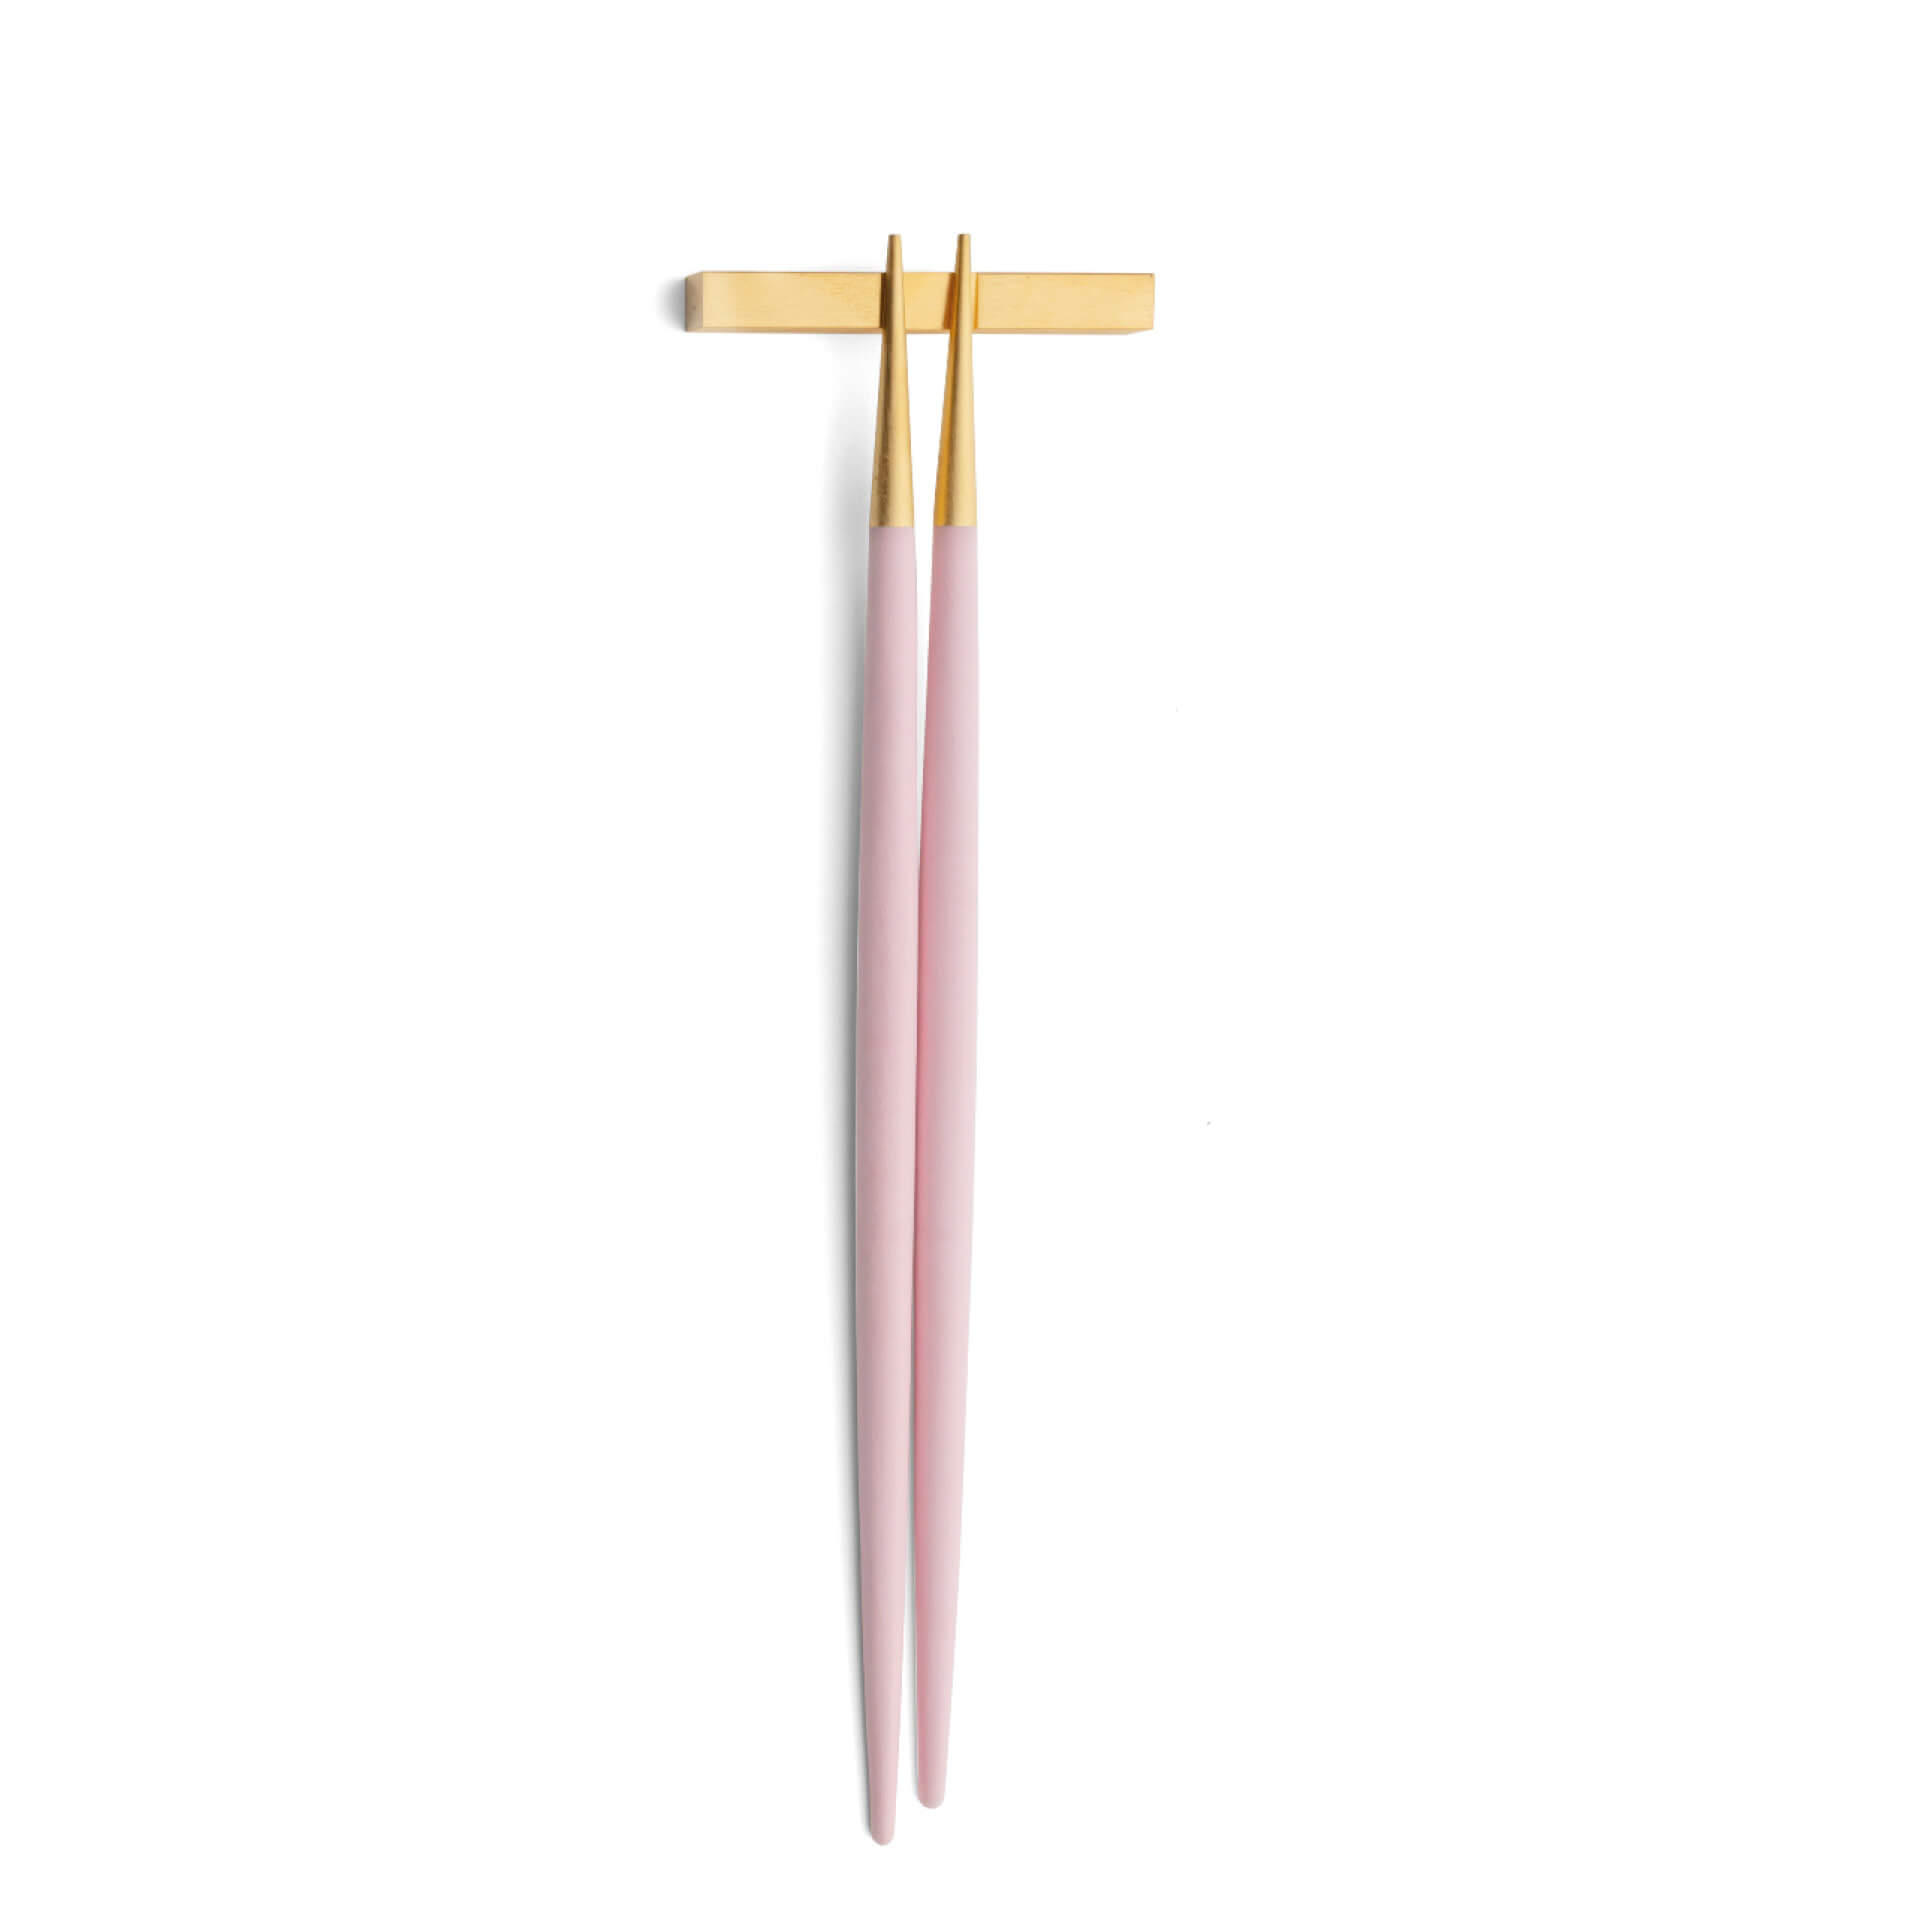 Cutipol Goa Pink Gold chopstick set and support